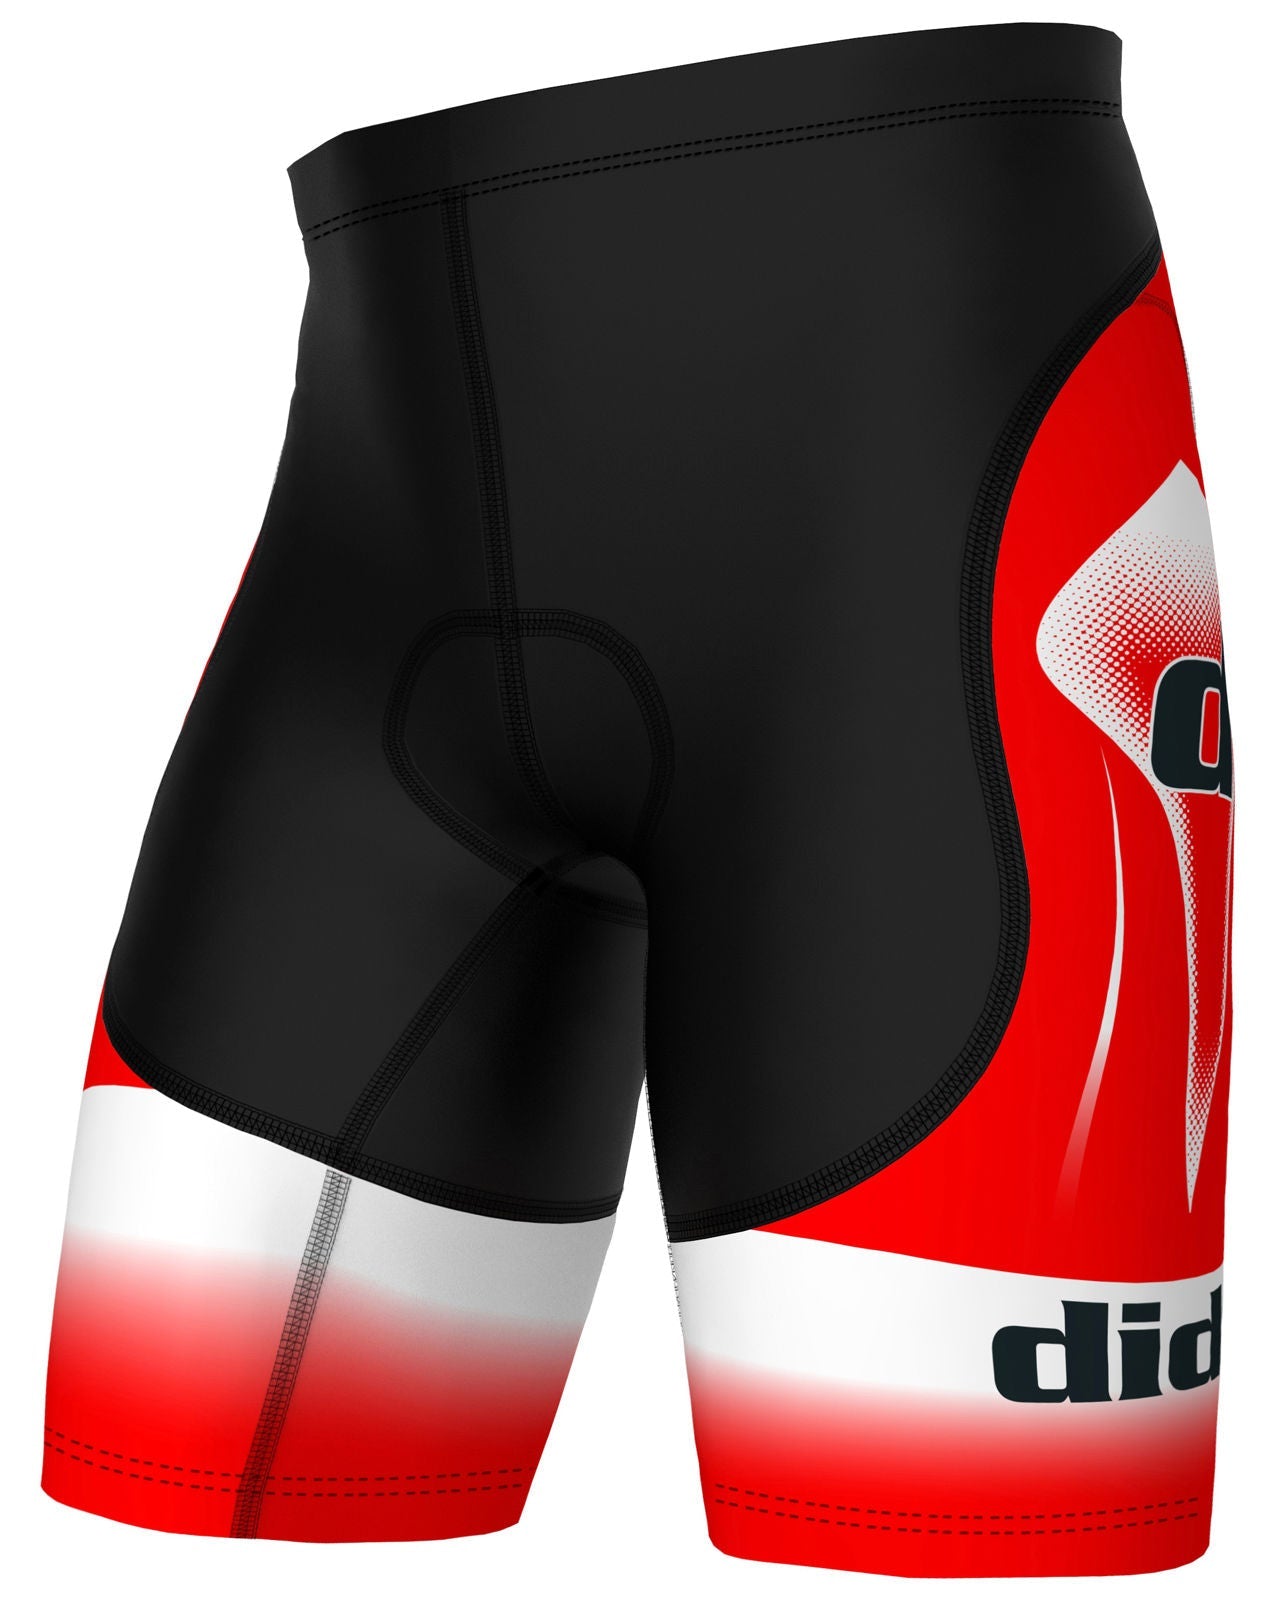 DiDoo Men's Classic Cycling Shorts